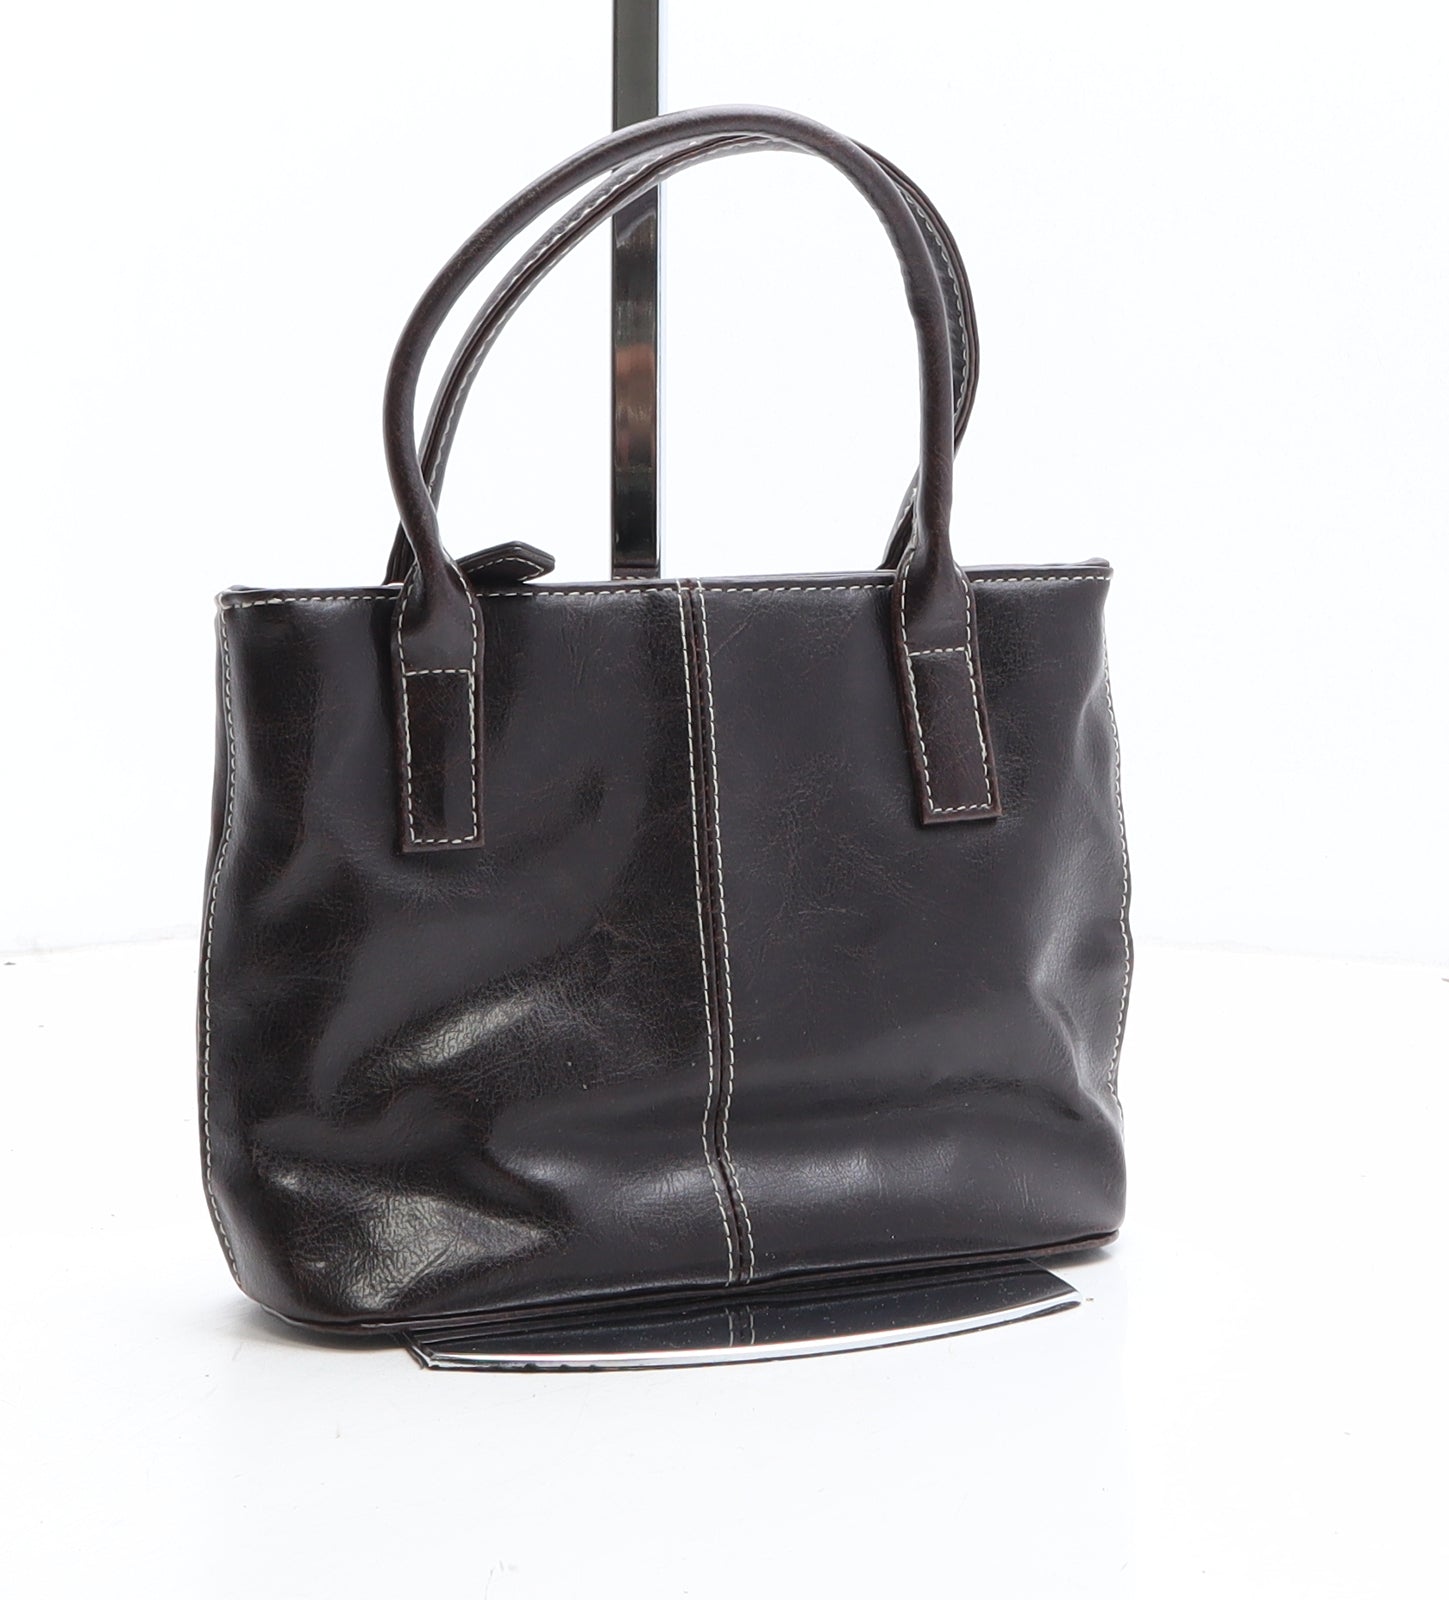 Black Satin Finish Handbag By Designer Sophie Gray (Bhs) Clutch or Shoulder  | eBay